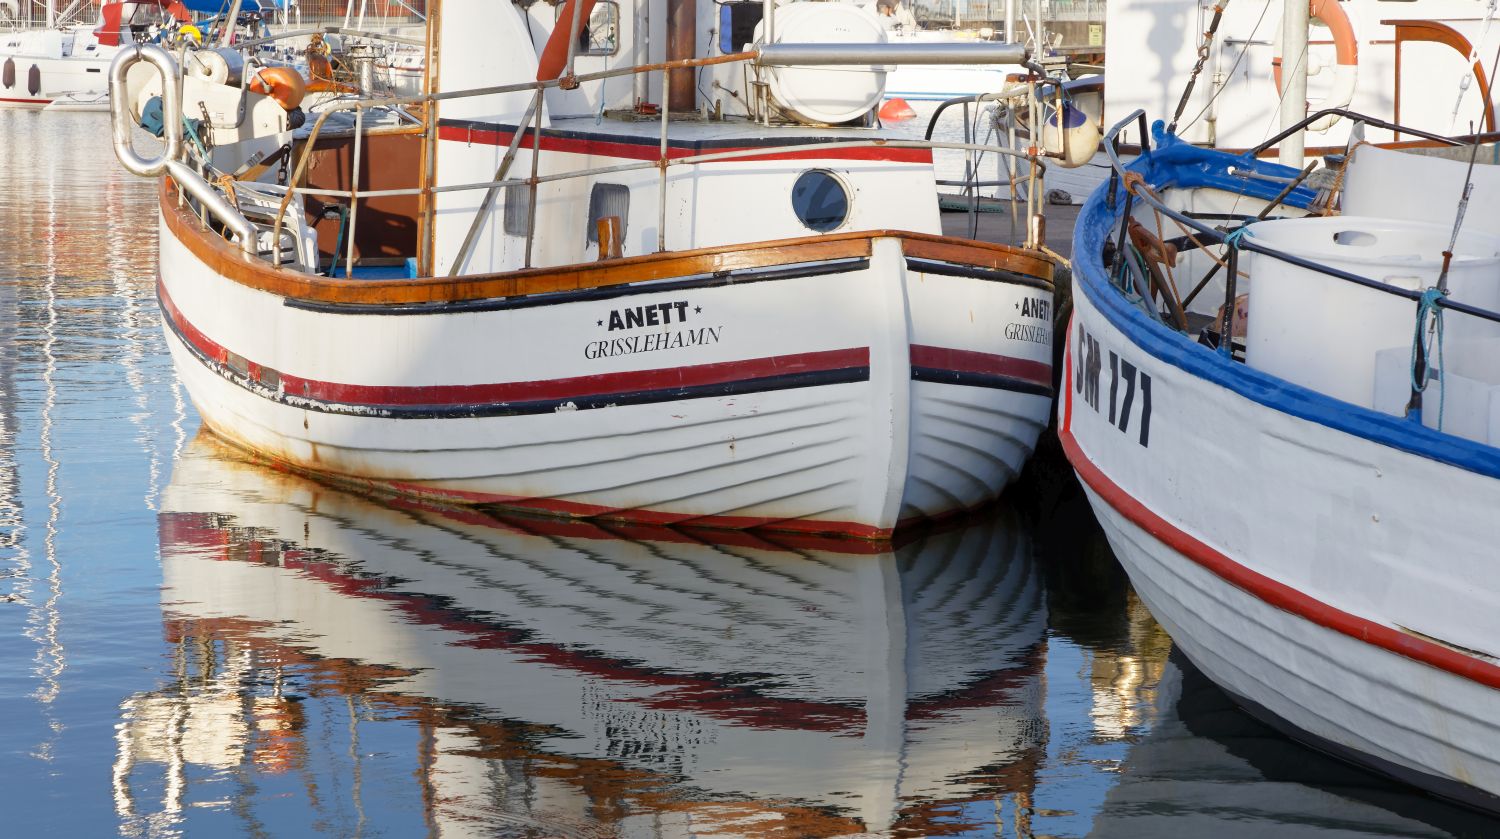 Fotografi föreställande en båthamn. En vitmålad, större båt i trä är i blickfånget. På båten står det Anett Grisslehamn med svarta bokstäver.